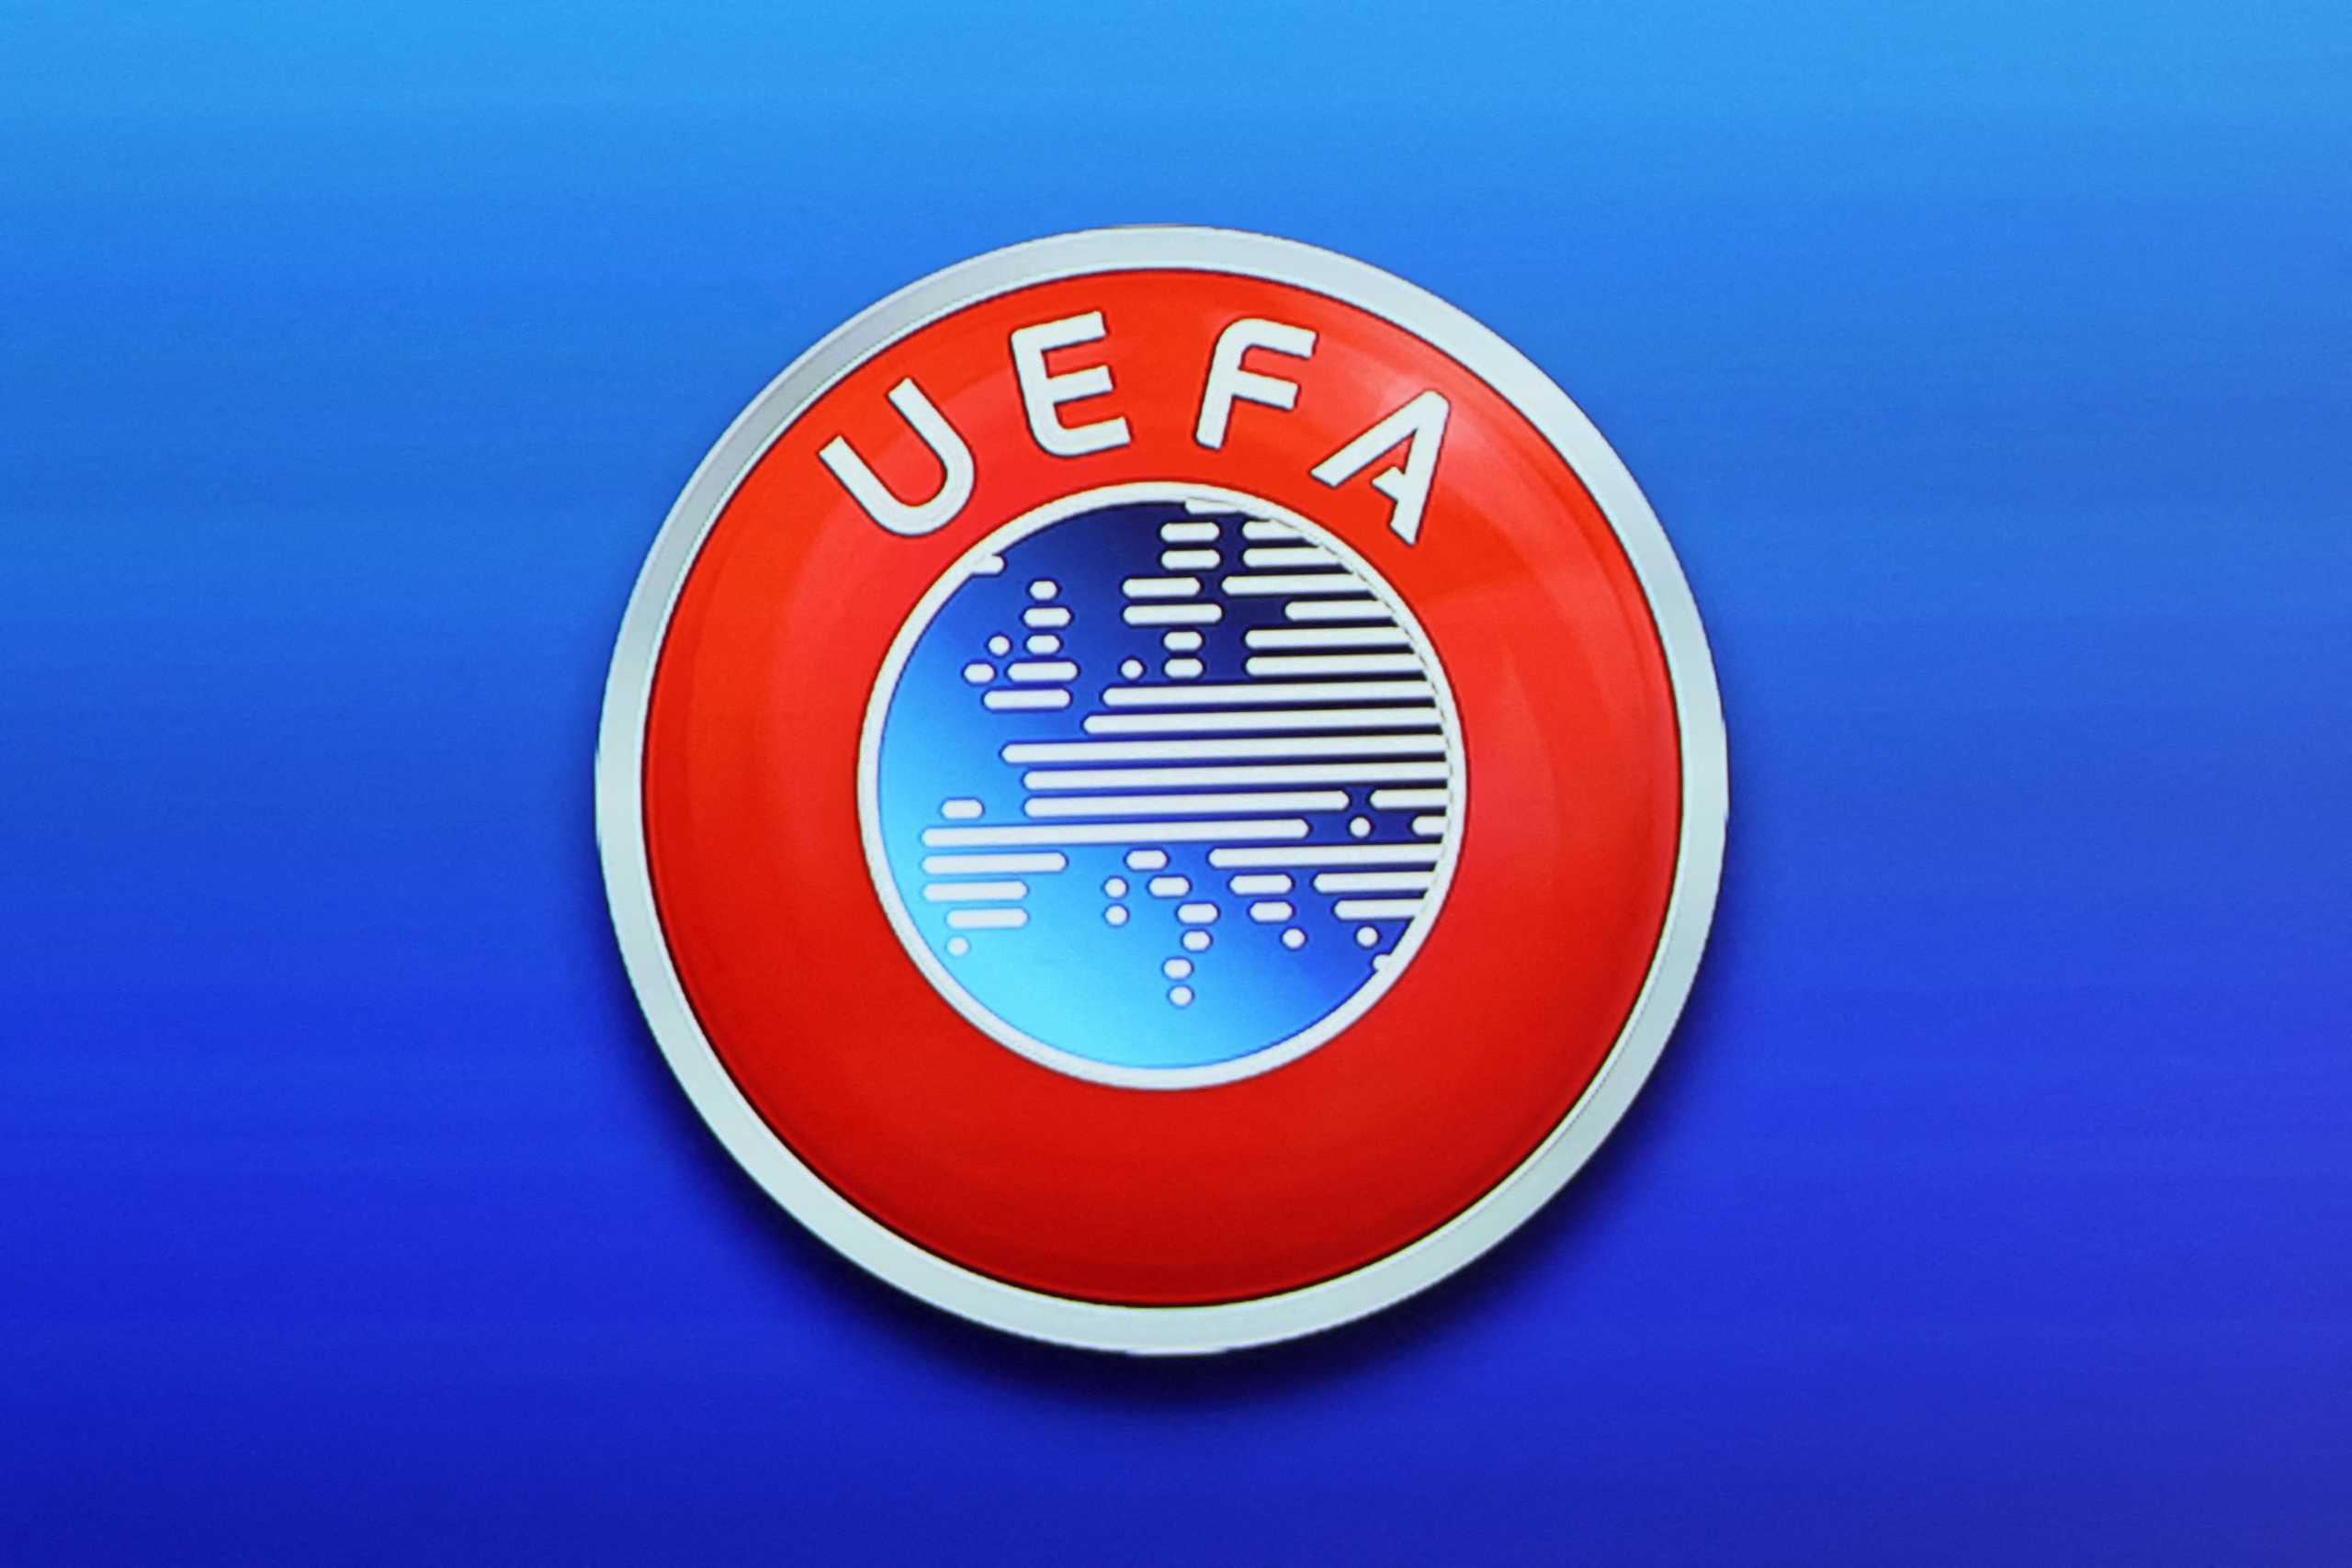 Βαθμολογία UEFA: Στην 16η θέση η Ελλάδα – Δύσκολη η συνέχεια με μόλις έναν εκπρόσωπο στην Ευρώπη